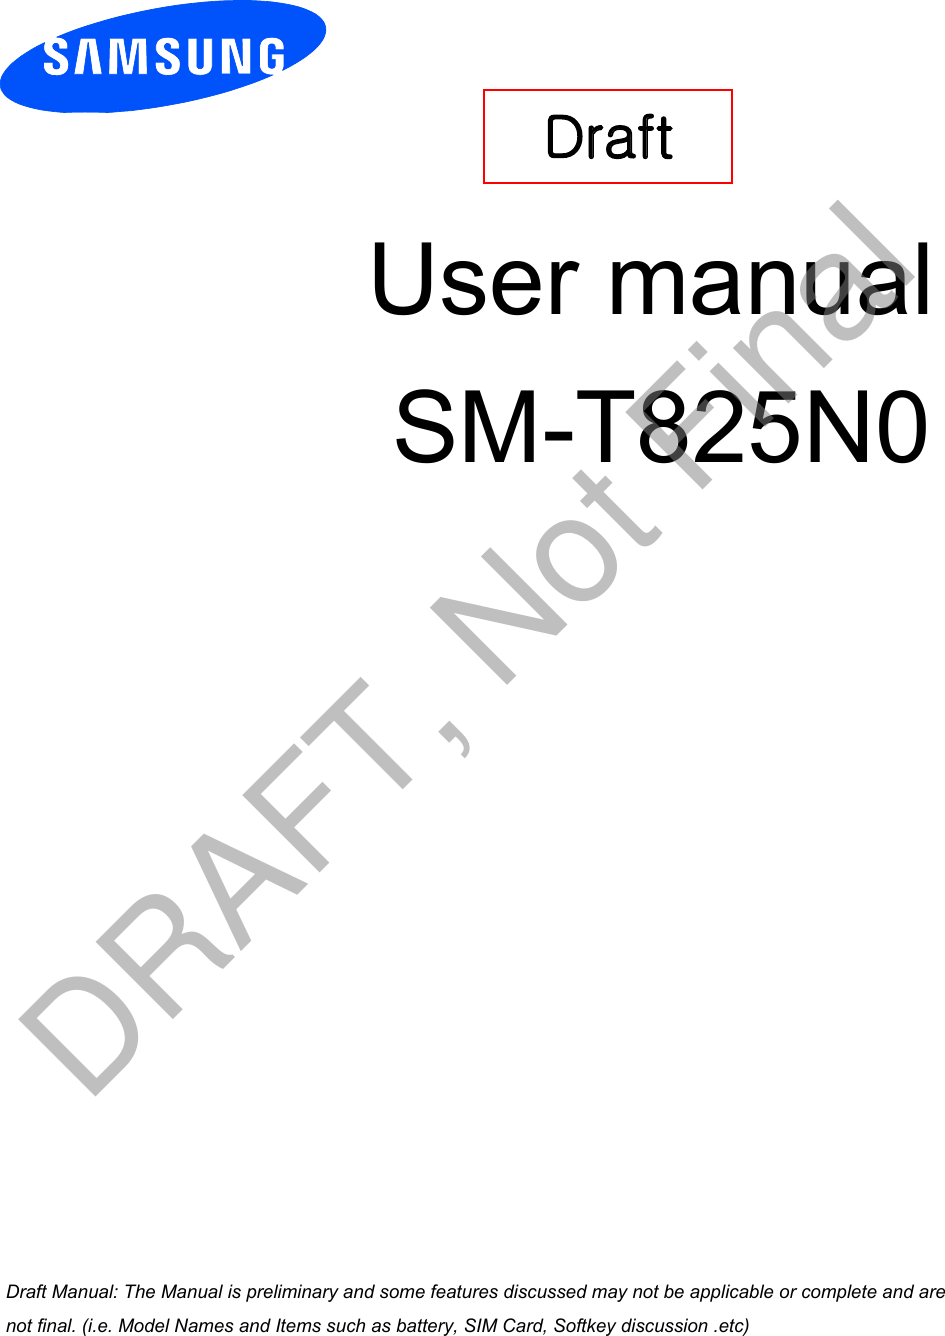 User manual SM-T825N0Draft a ana  ana  na and  a dd a n  aa   and a n na  d a and   a a  ad  dn DRAFT, Not Final